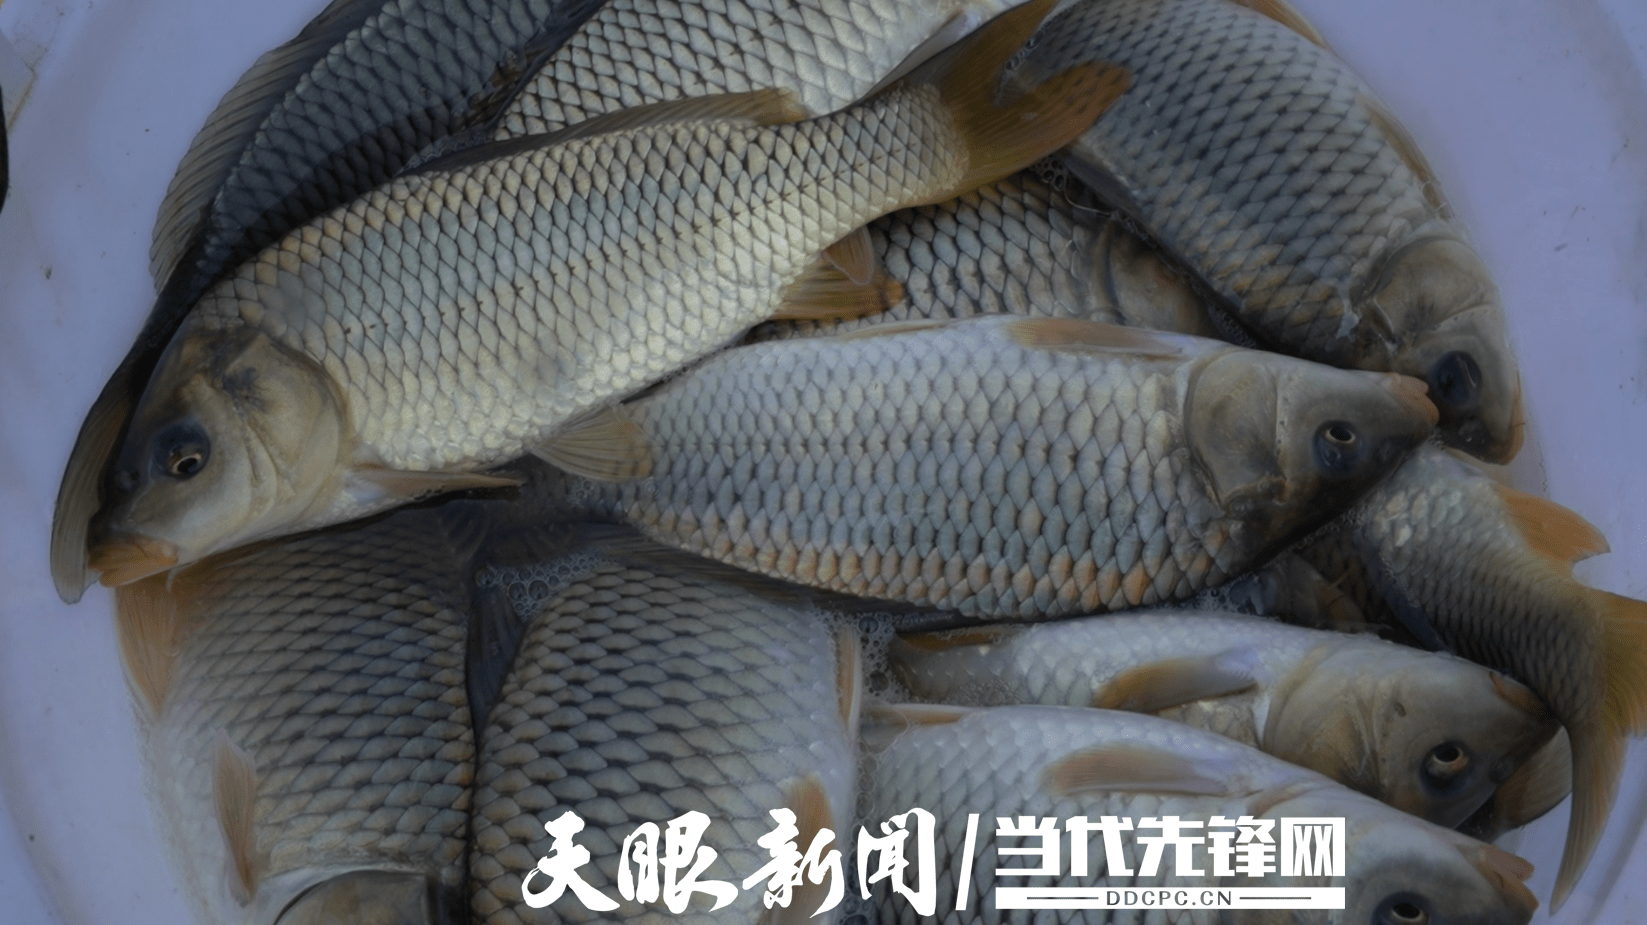 黄平旧州出了位养鱼大王用手机养鱼一年卖60万